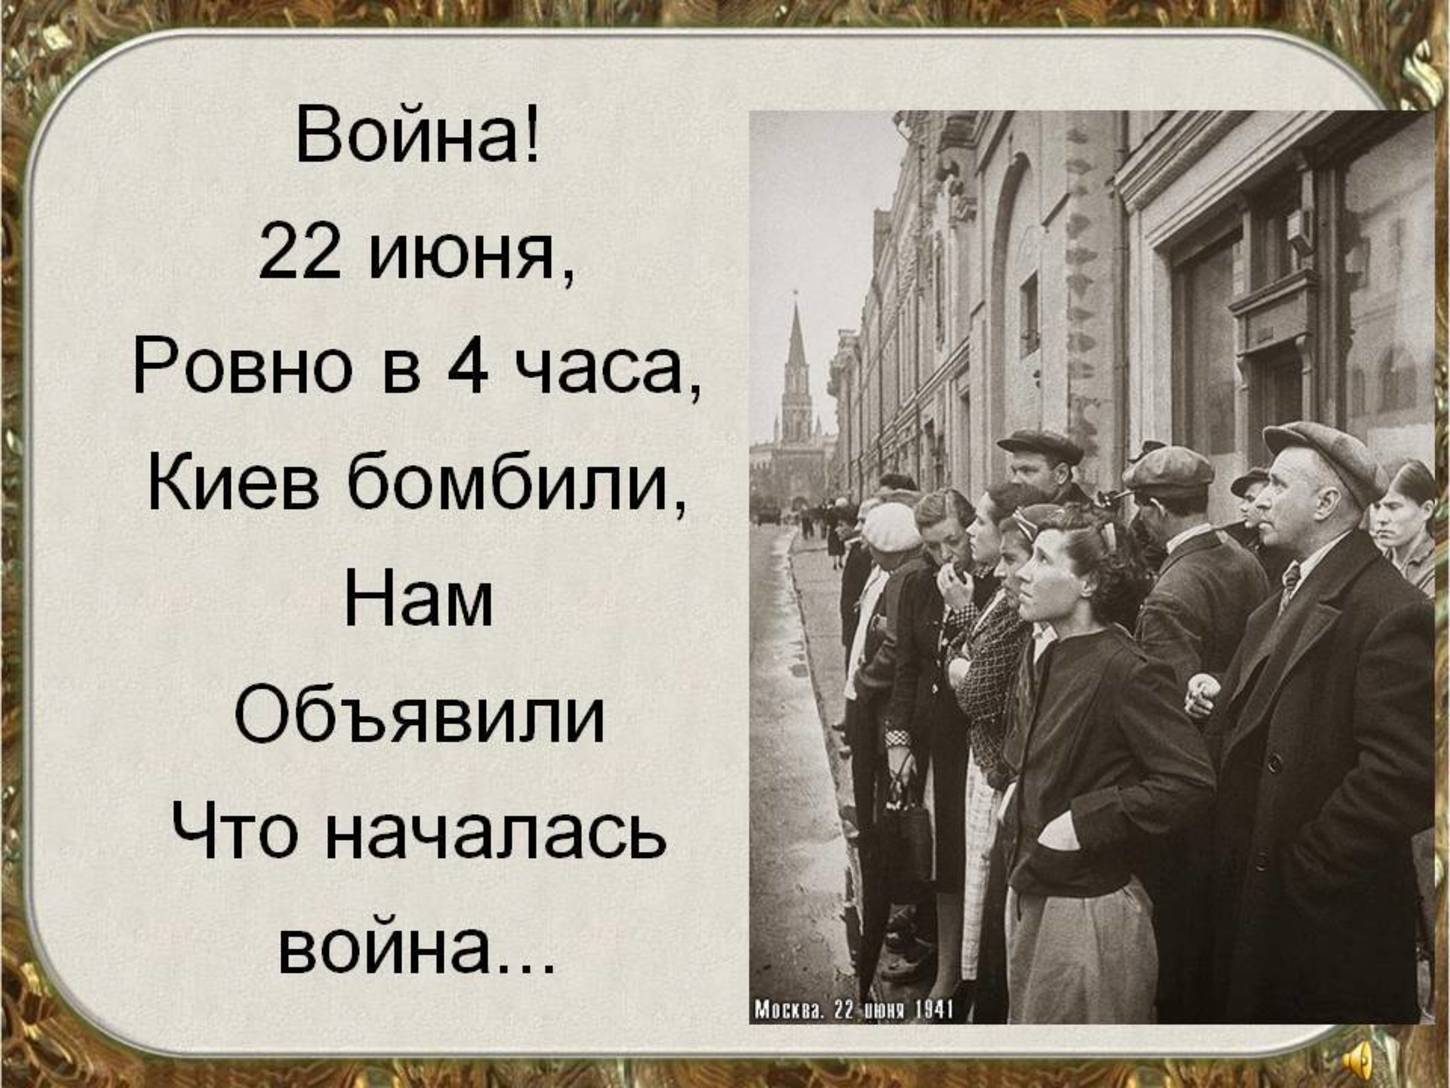 22 июня киев бомбили. 22 Июня Ровно в четыре часа. Двадцать второго июня Ровно в 4 часа.